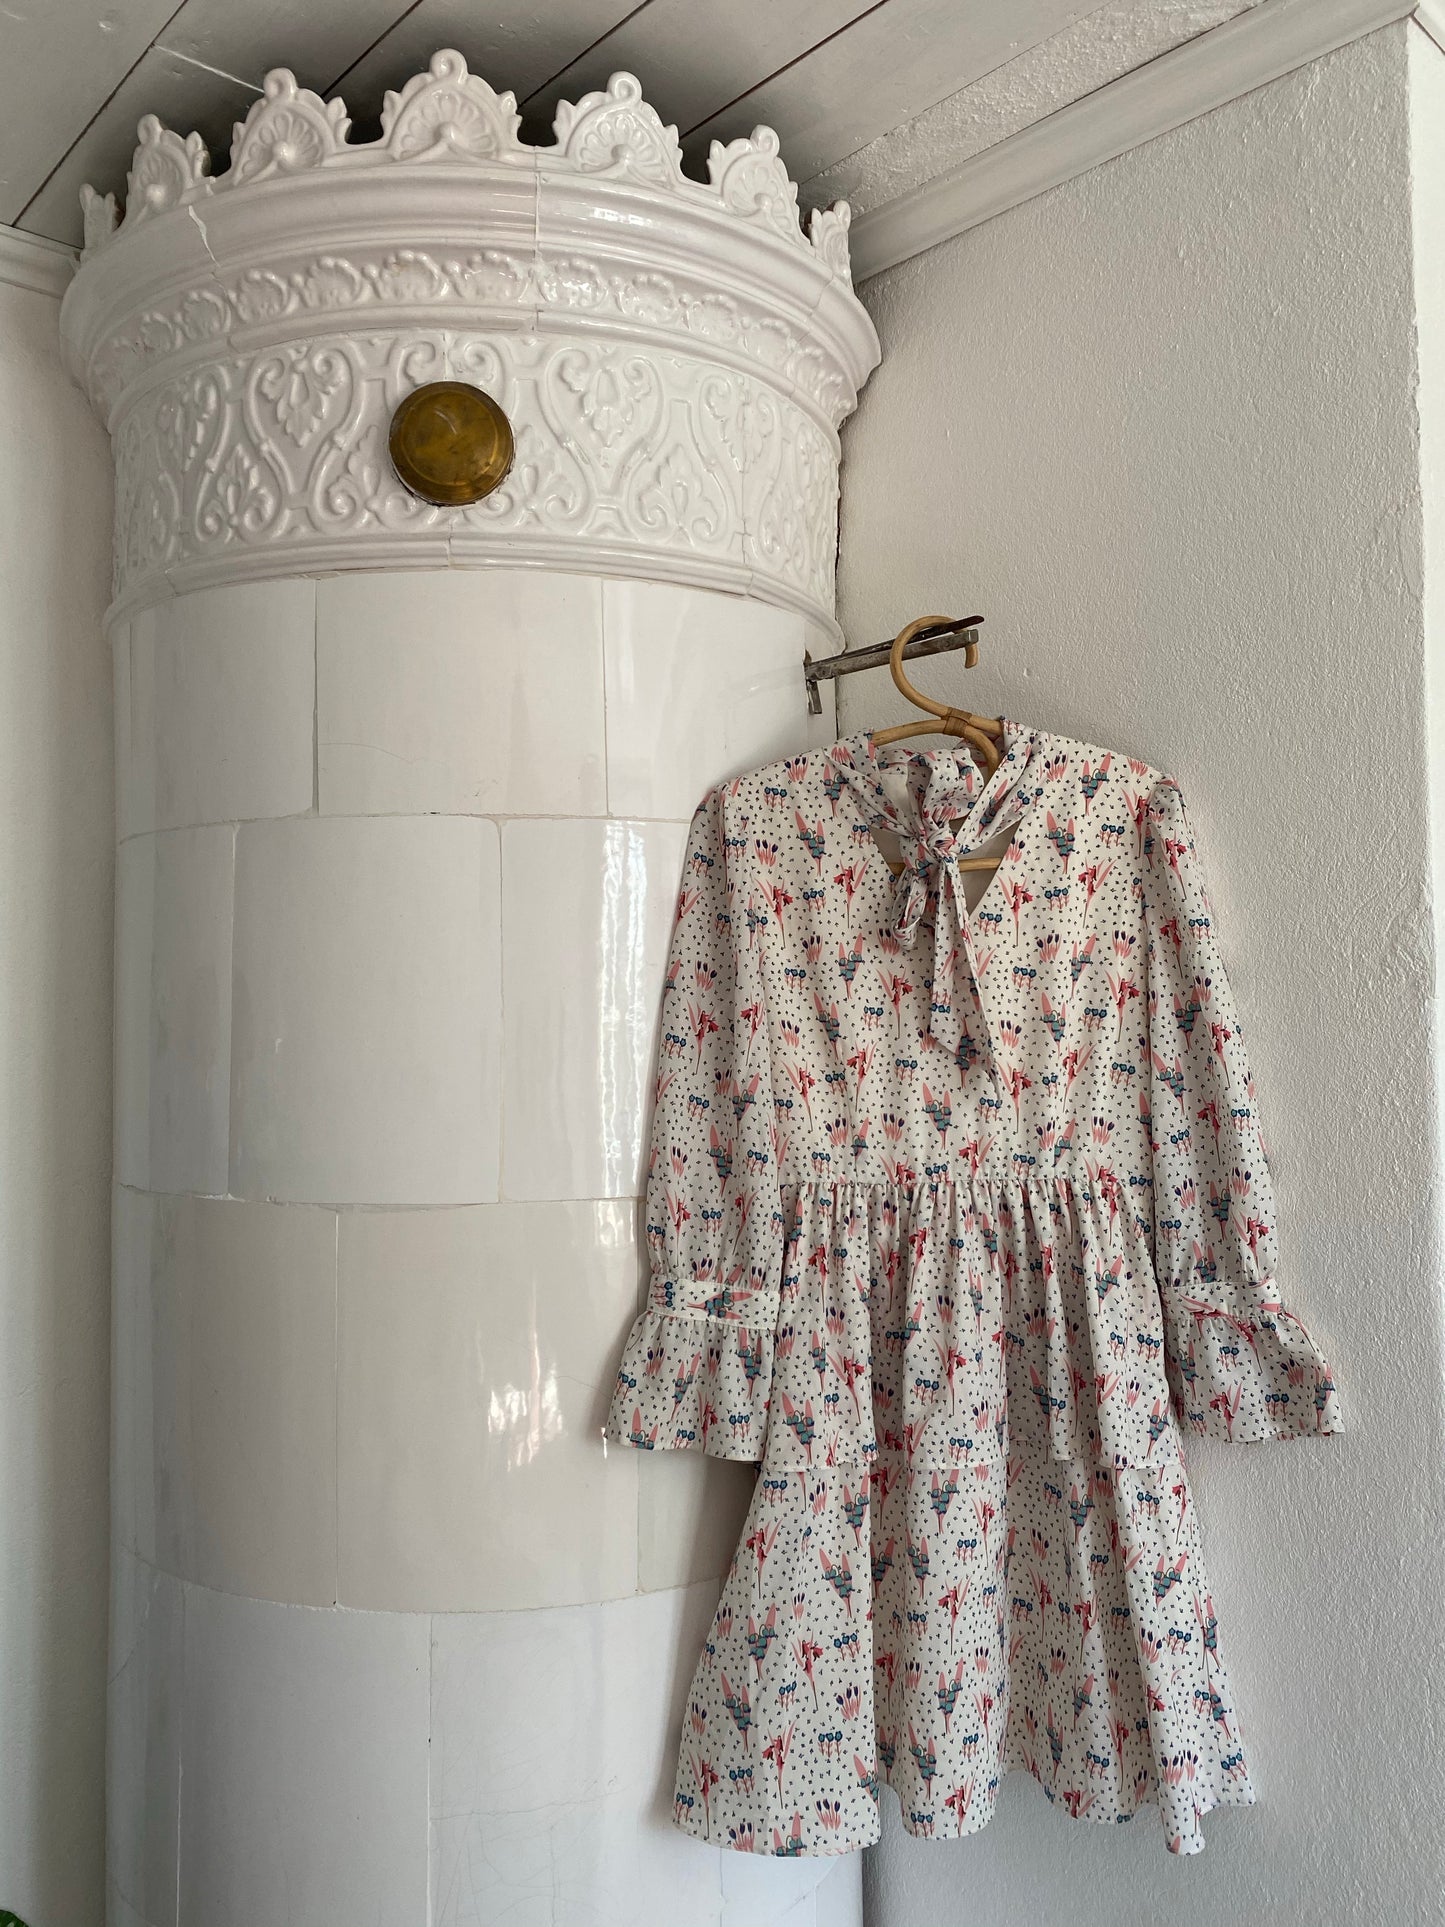 Finaste klänningen med små tulpaner, lilekonvalj och klockor